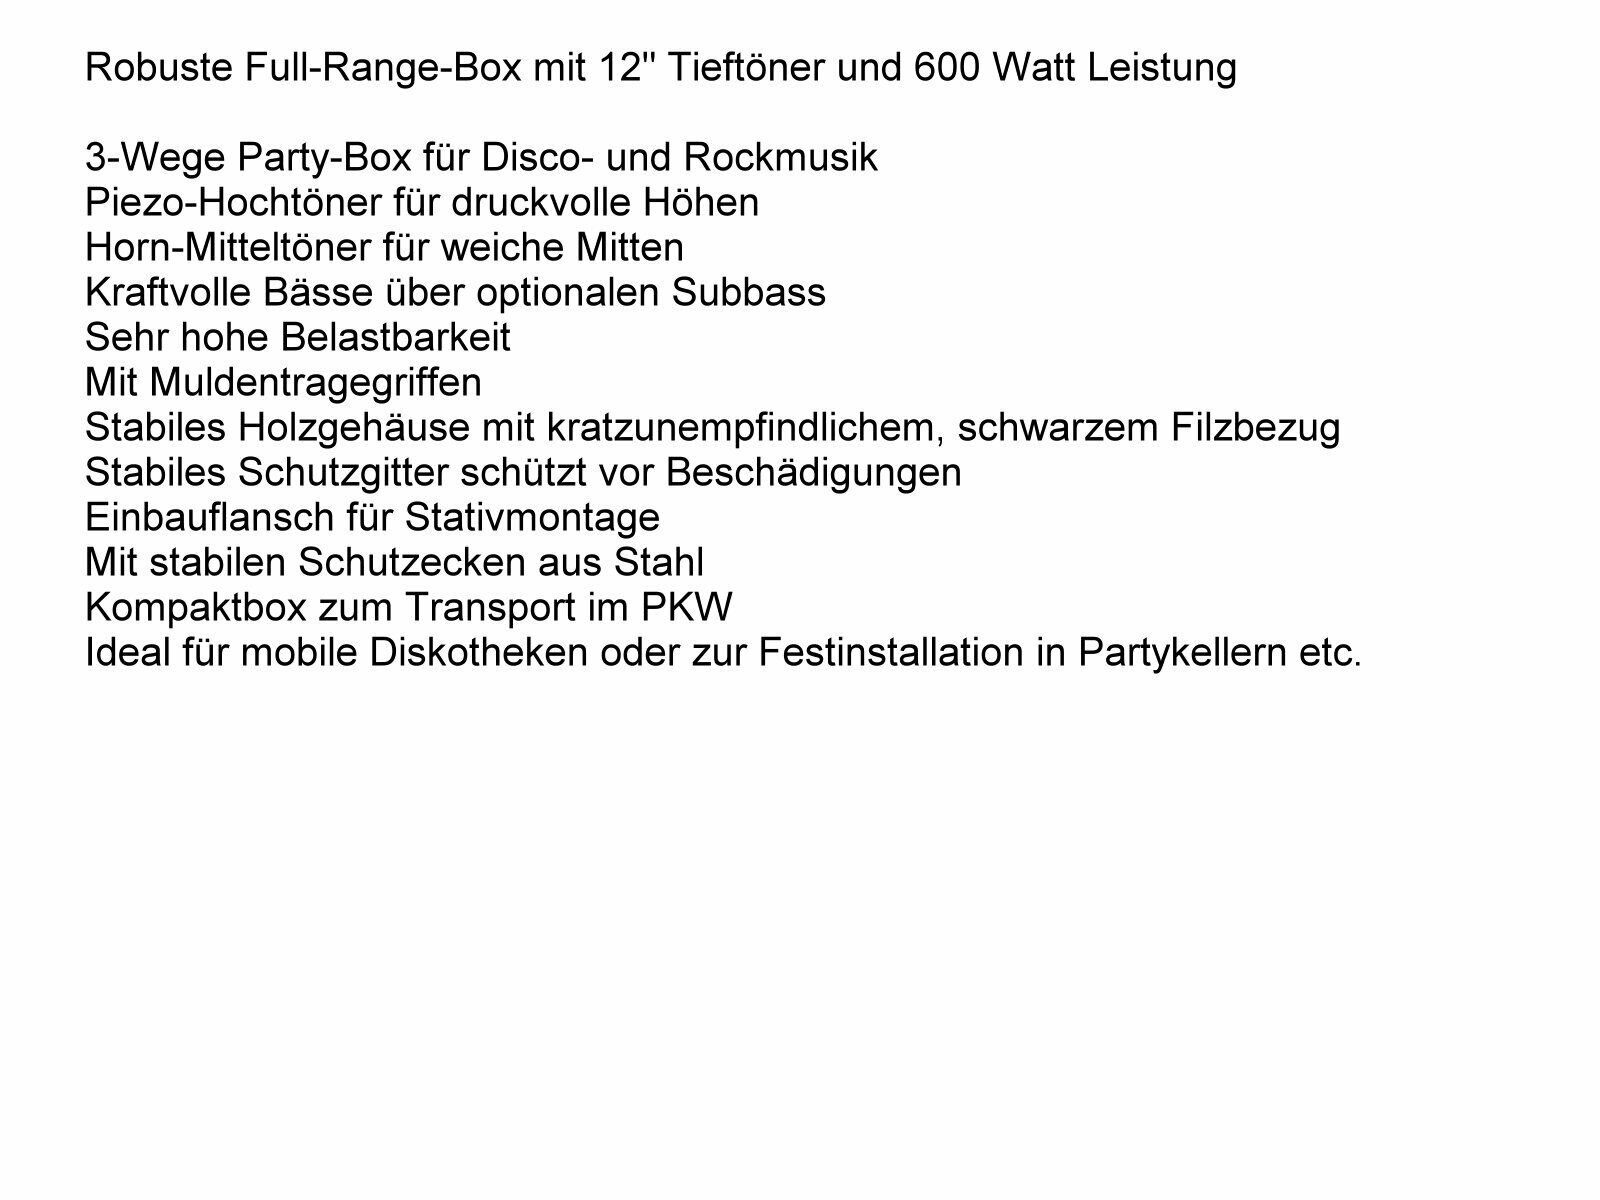 DSX Powermixer Anlage Boxen W) Watt Kabel (900 1800 Stativ Musik Lichtset Party-Lautsprecher